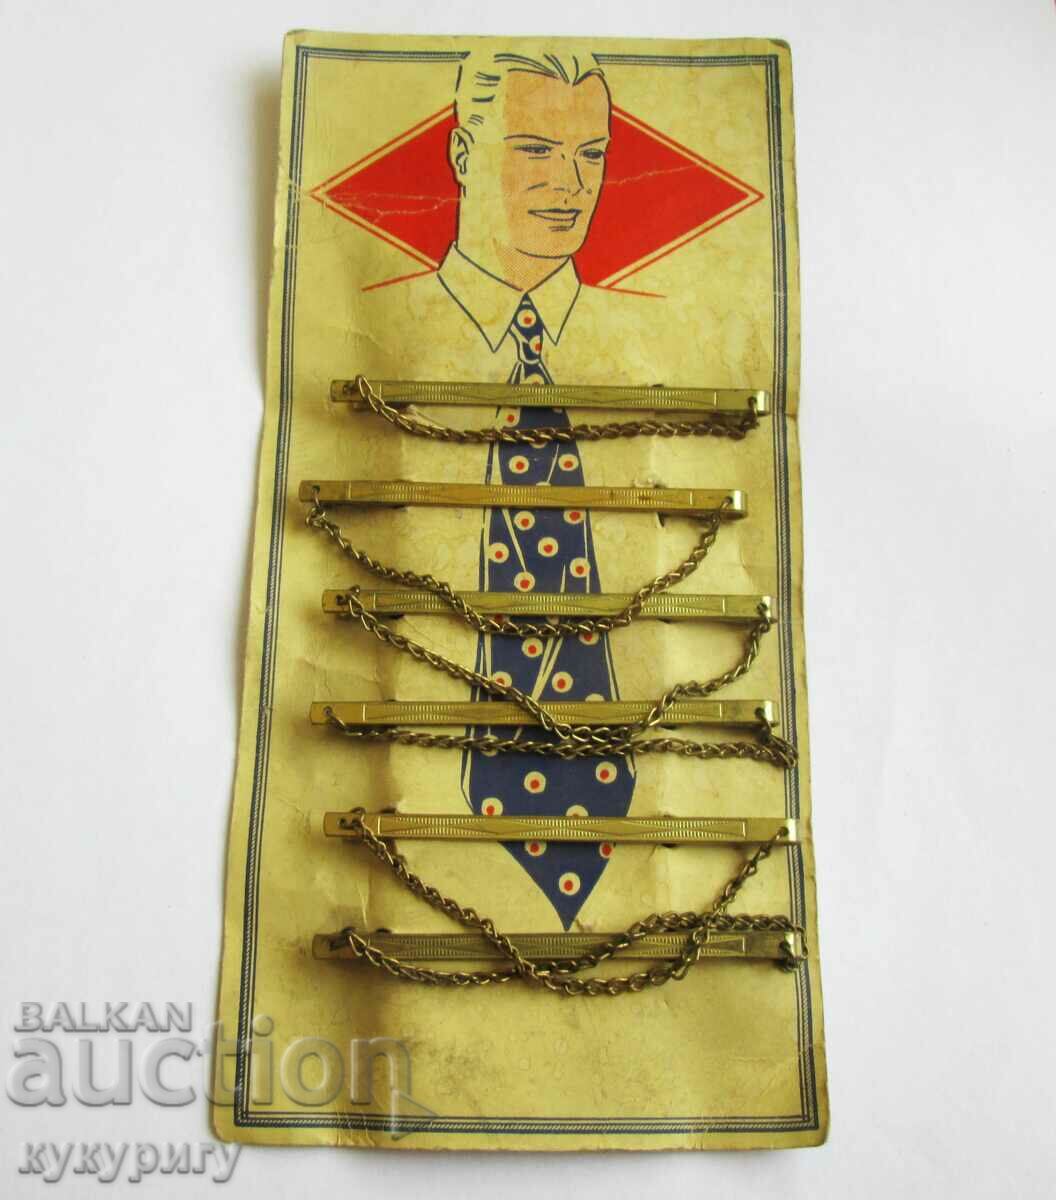 Vechi suport publicitar publicitar cu cleme de cravata 1930